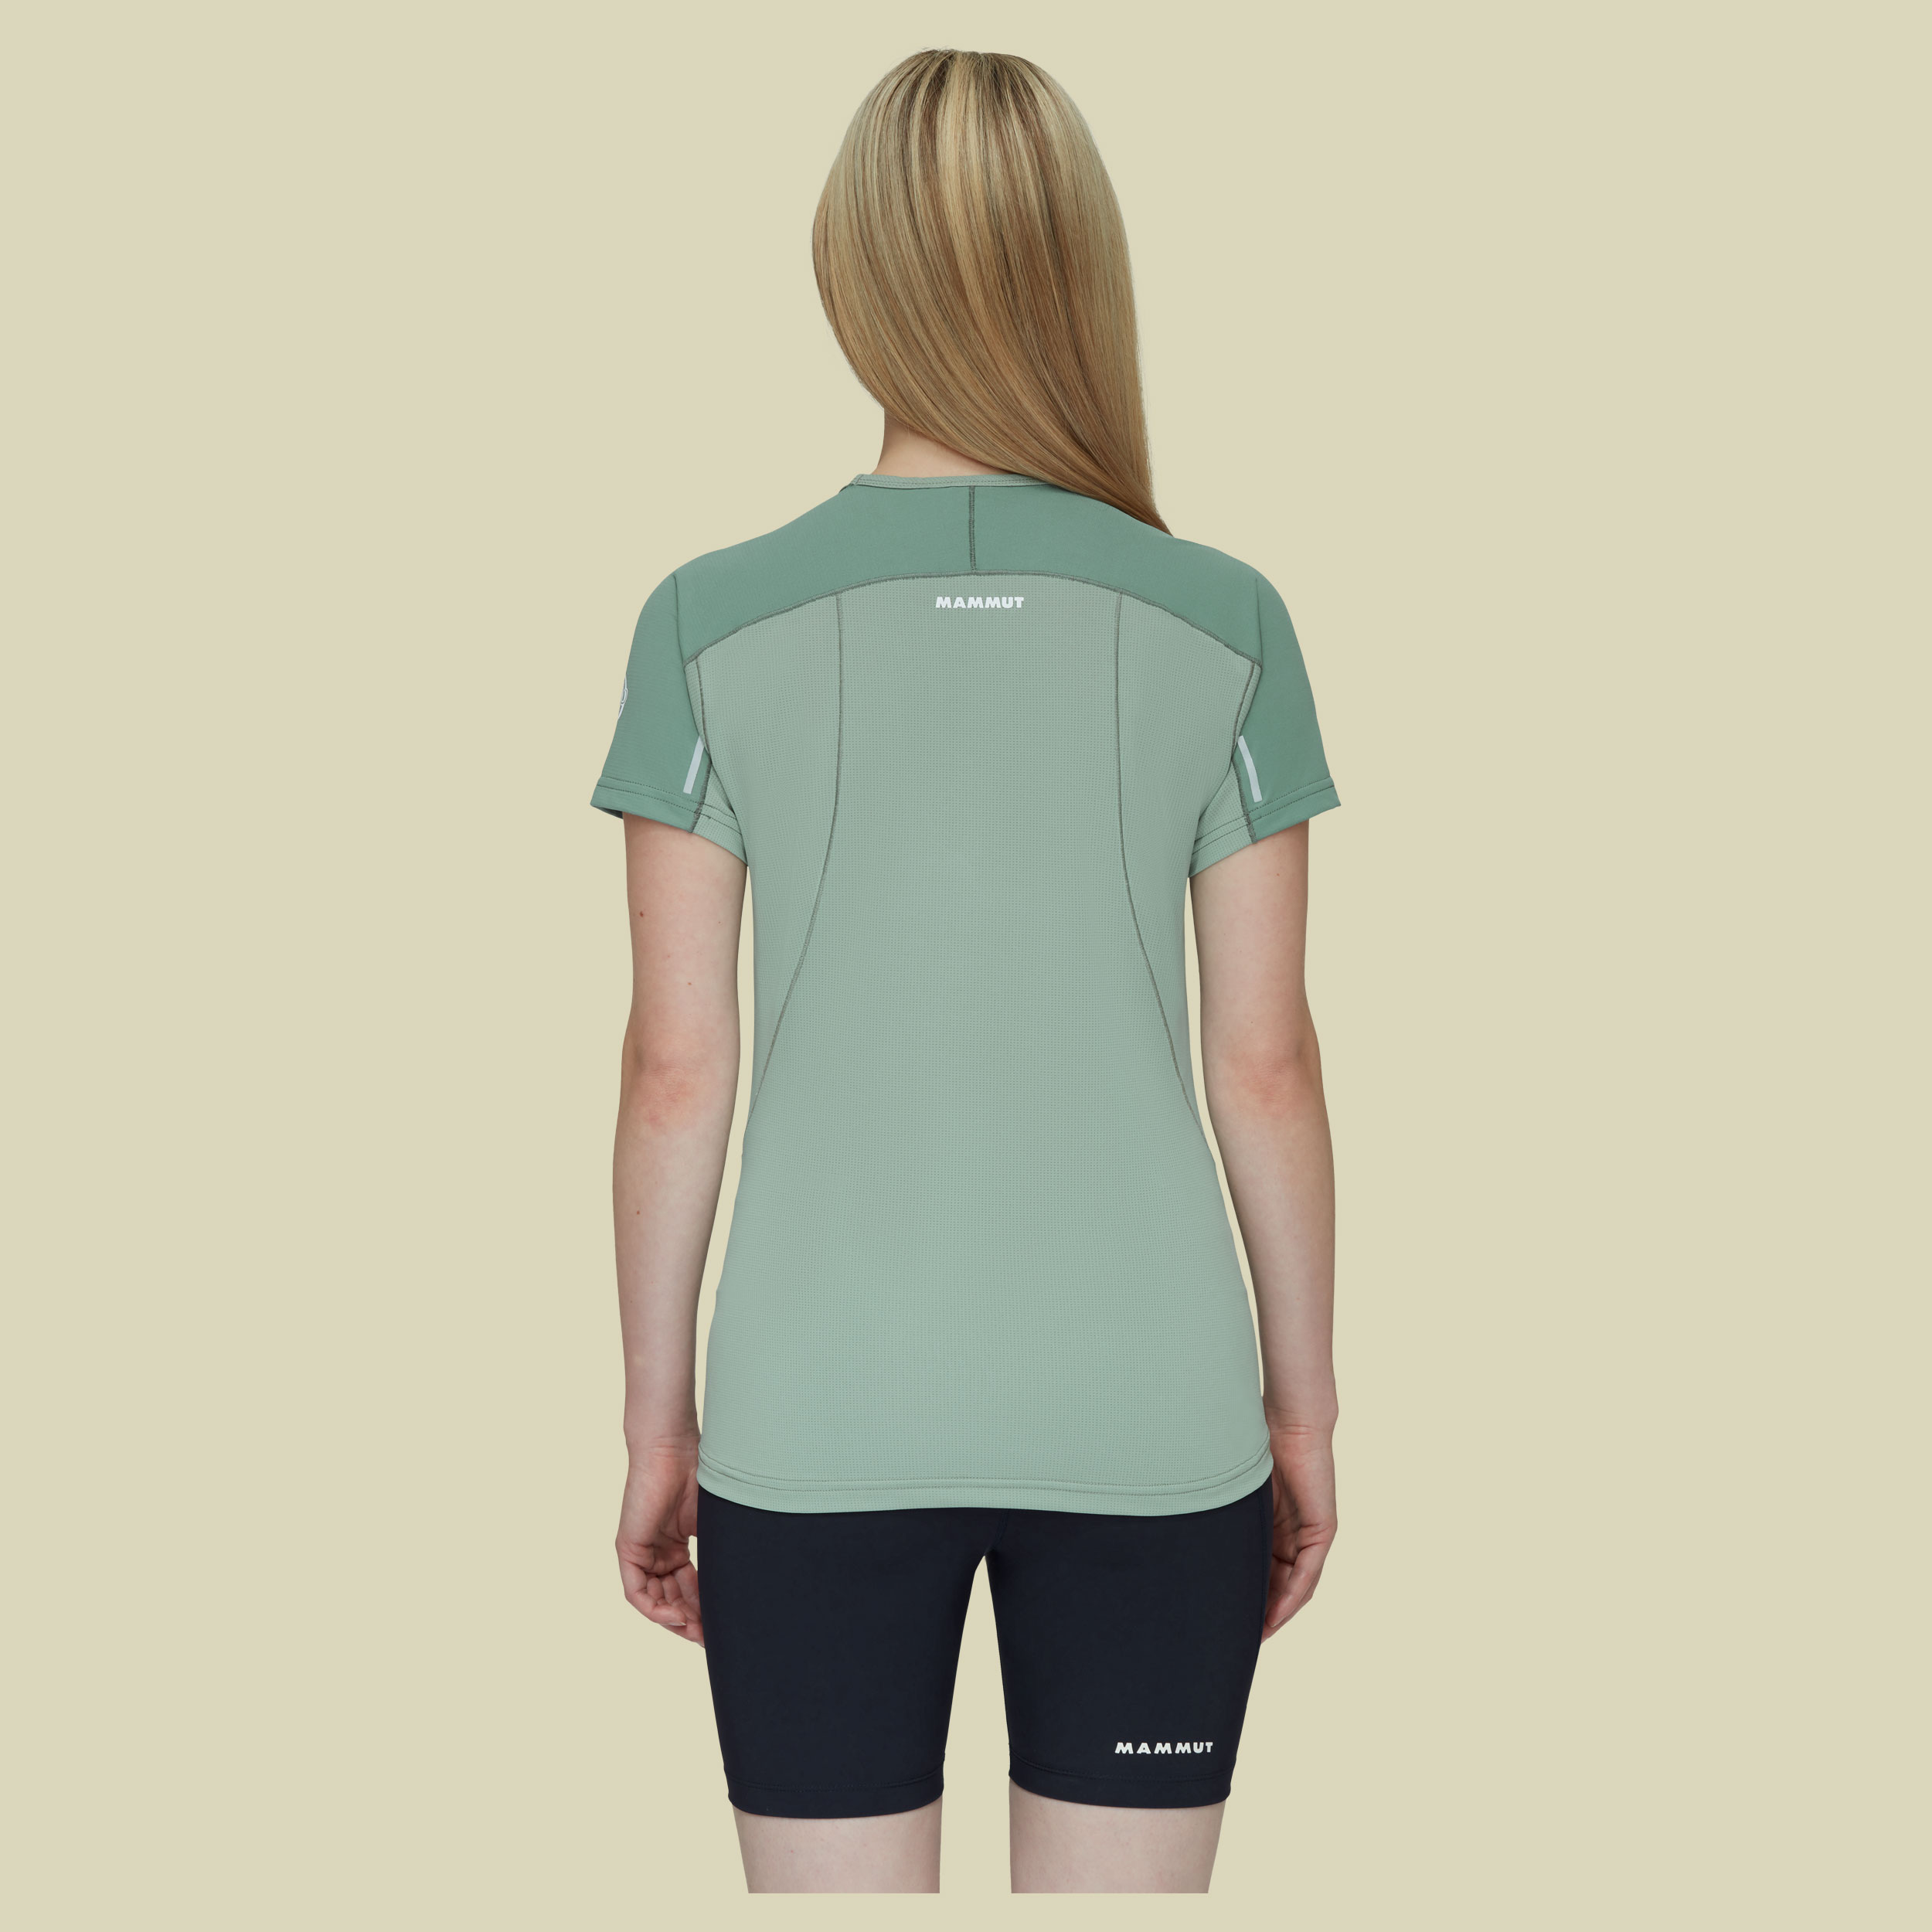 Aenergy FL T-Shirt Women Größe M  Farbe dark jade-jade